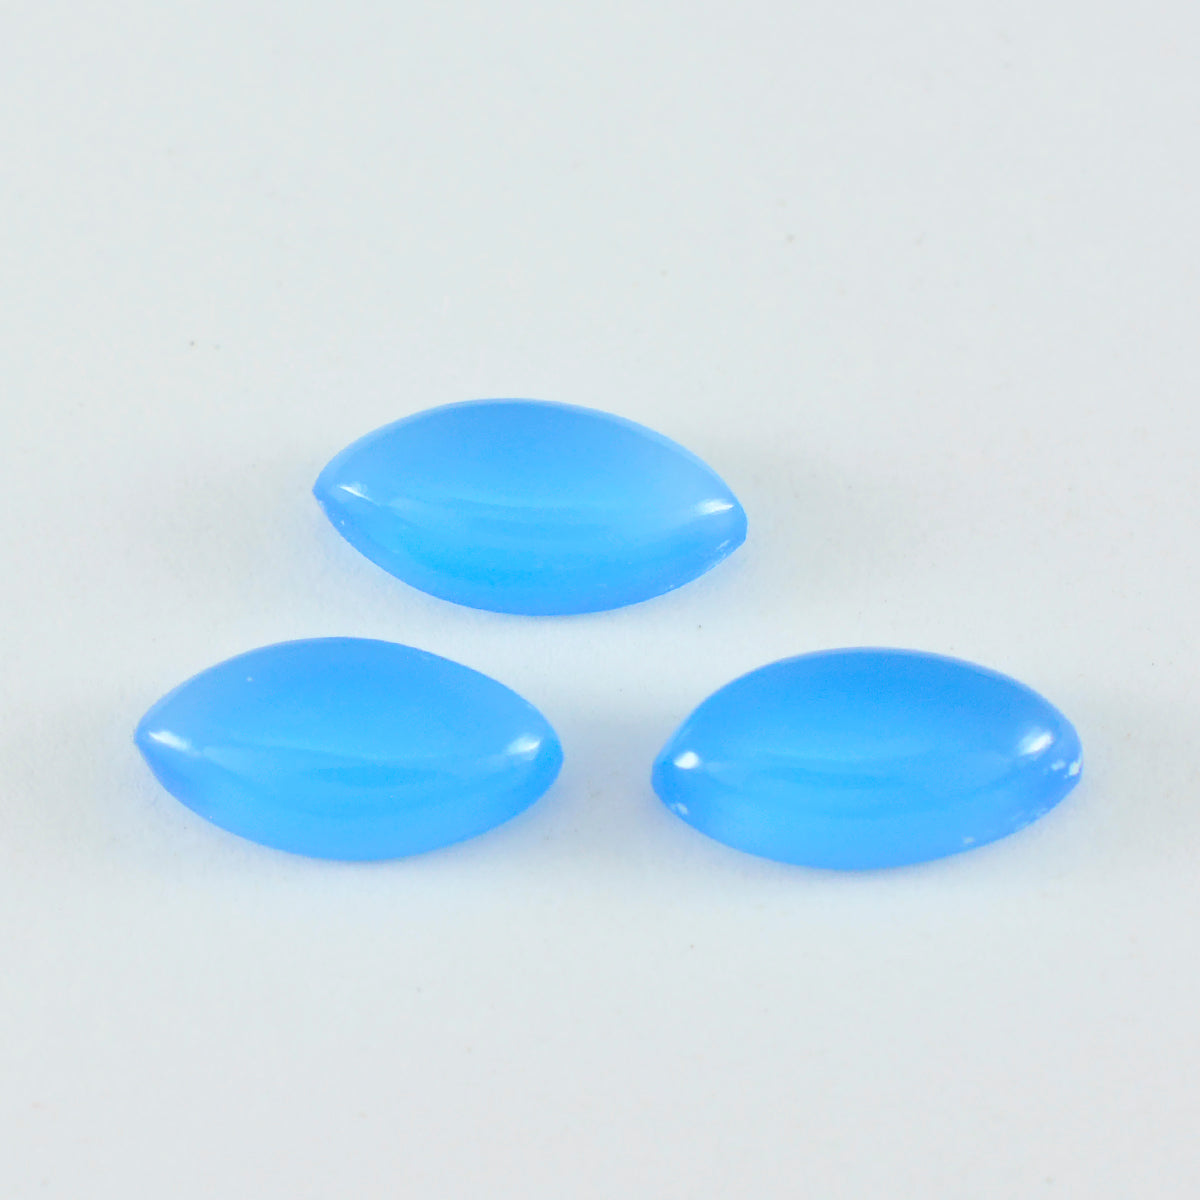 Riyogems 1 pieza cabujón de Calcedonia azul 7x14mm forma de marquesa gema de calidad hermosa